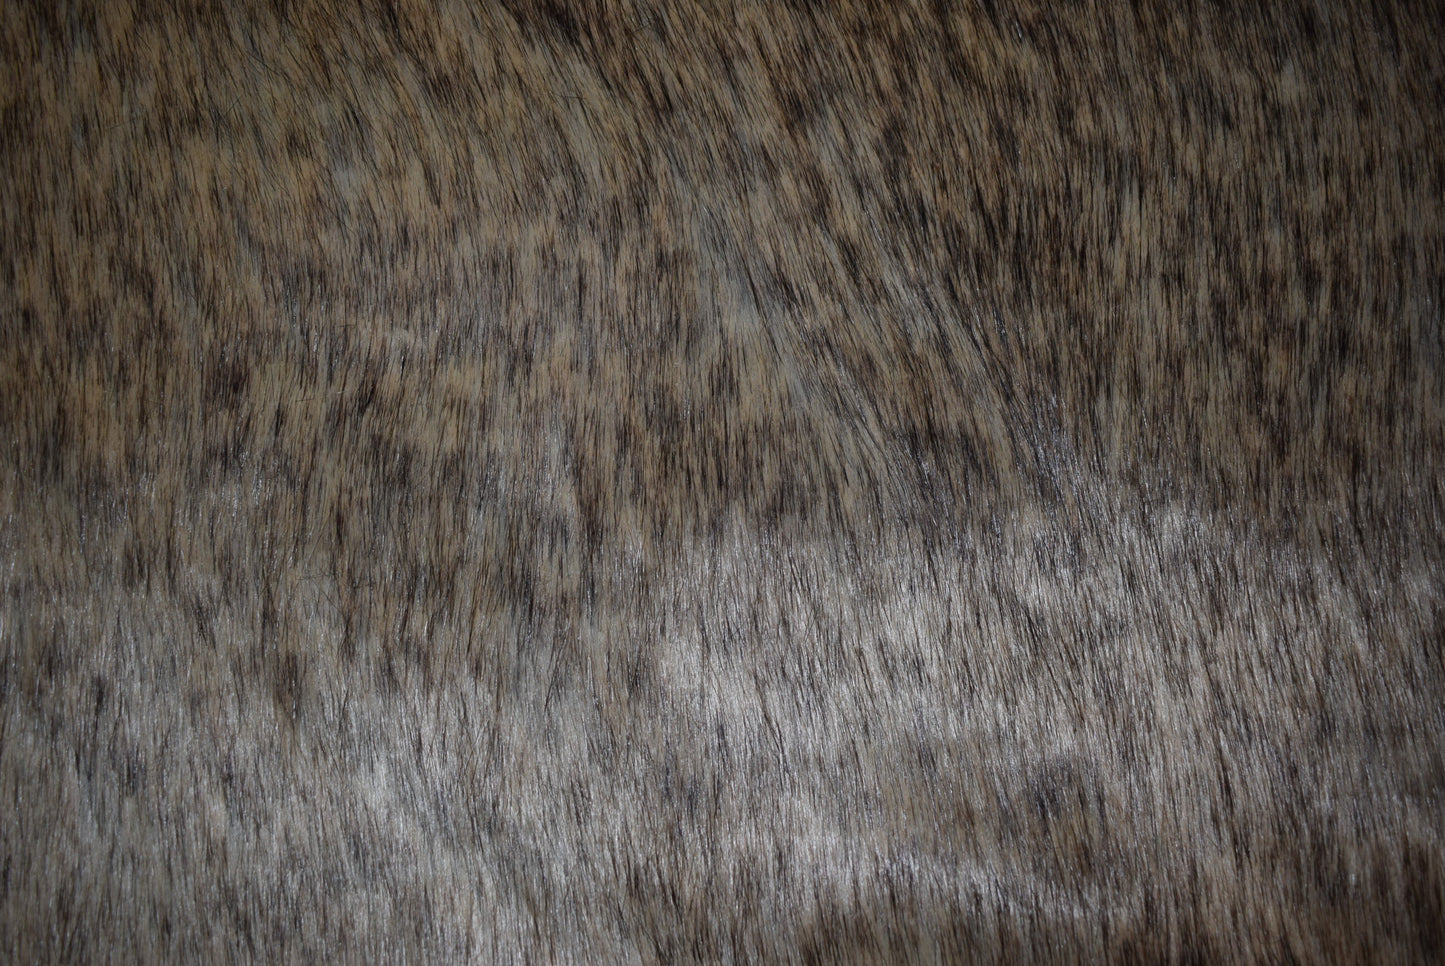 Super Plush 'Wolf' Faux Fur